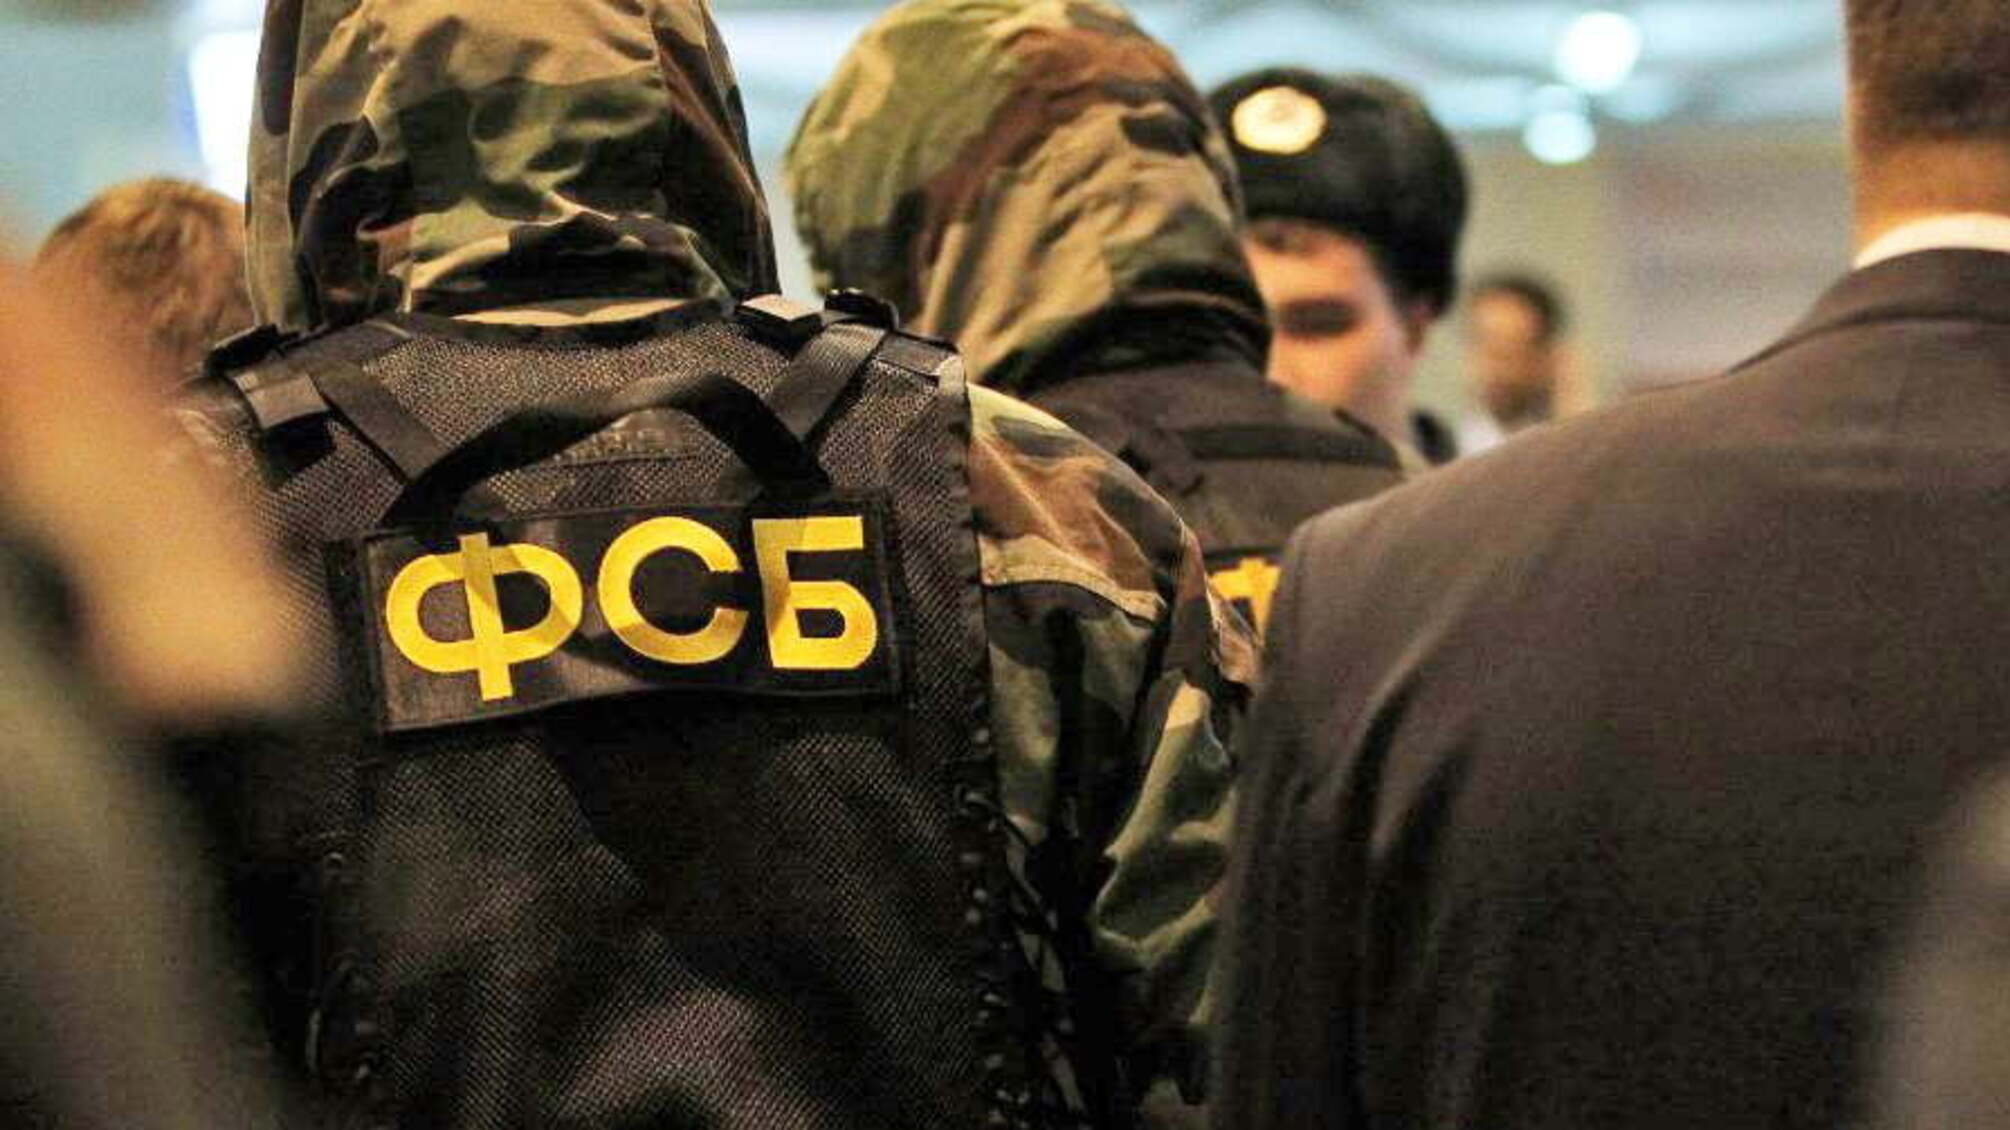 Трое агентов украинских спецслужб задержаны в России, — ФСБ